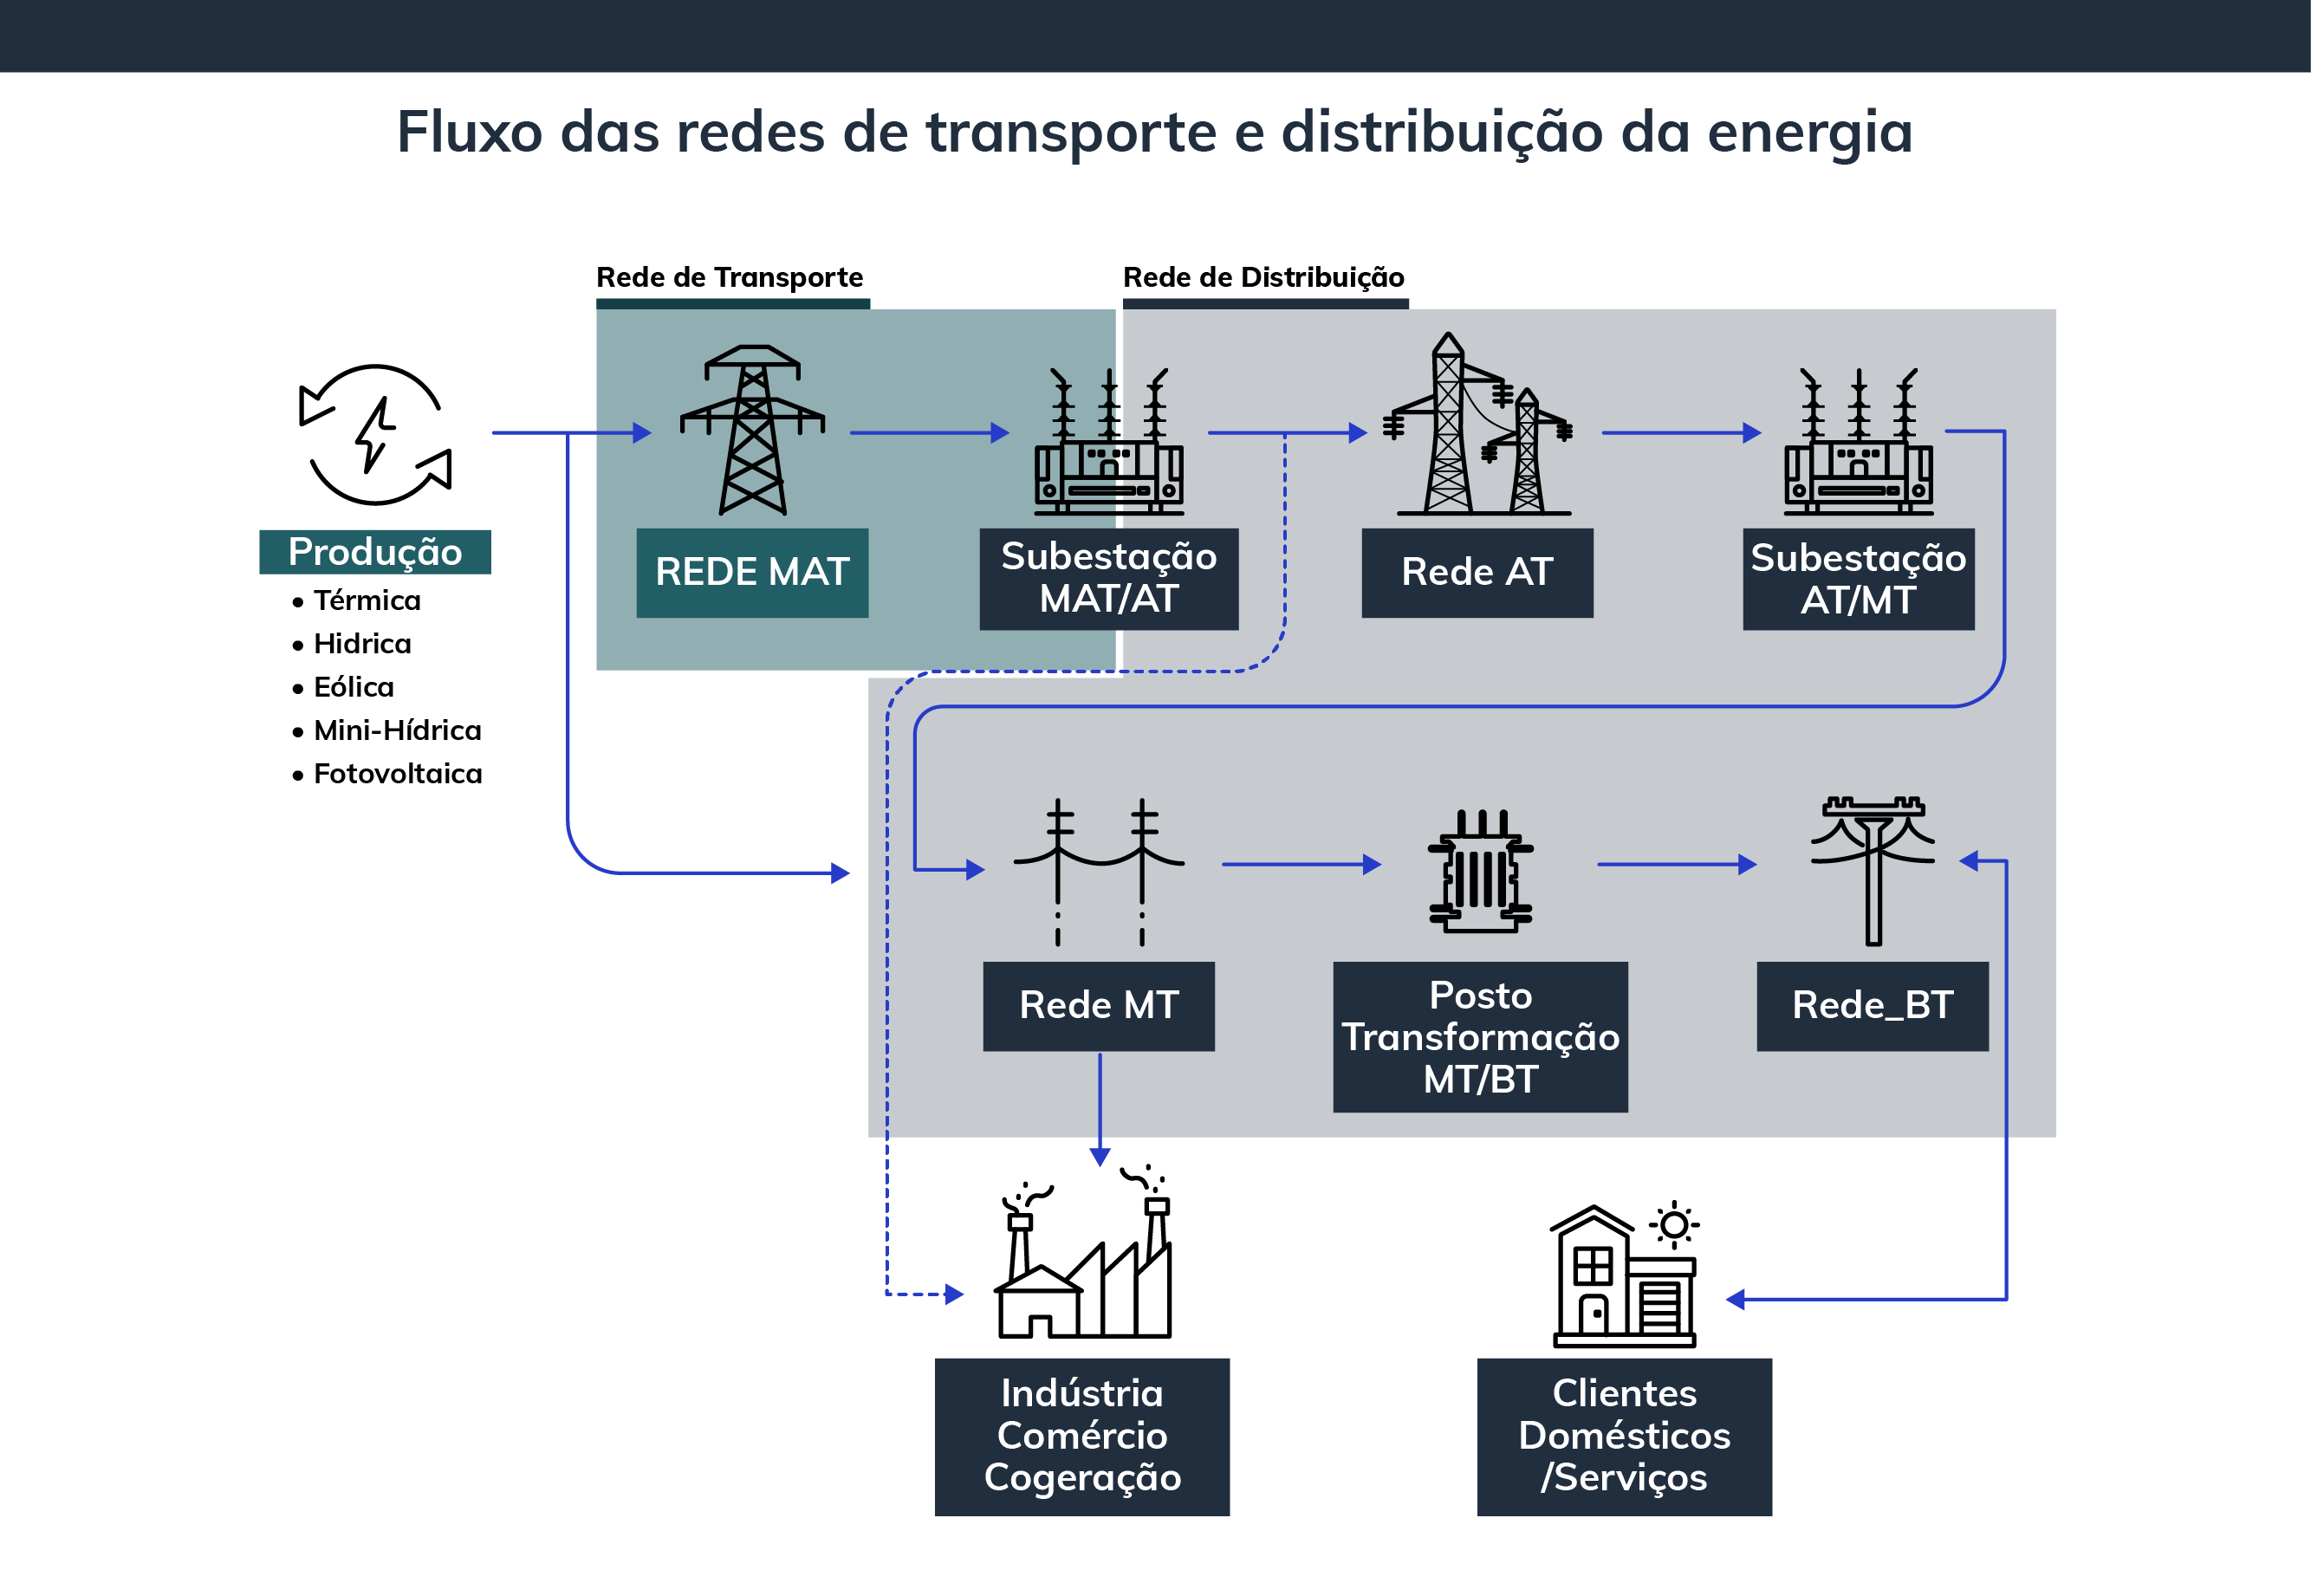 Fluxo das redes de transporte e distribuição de energia